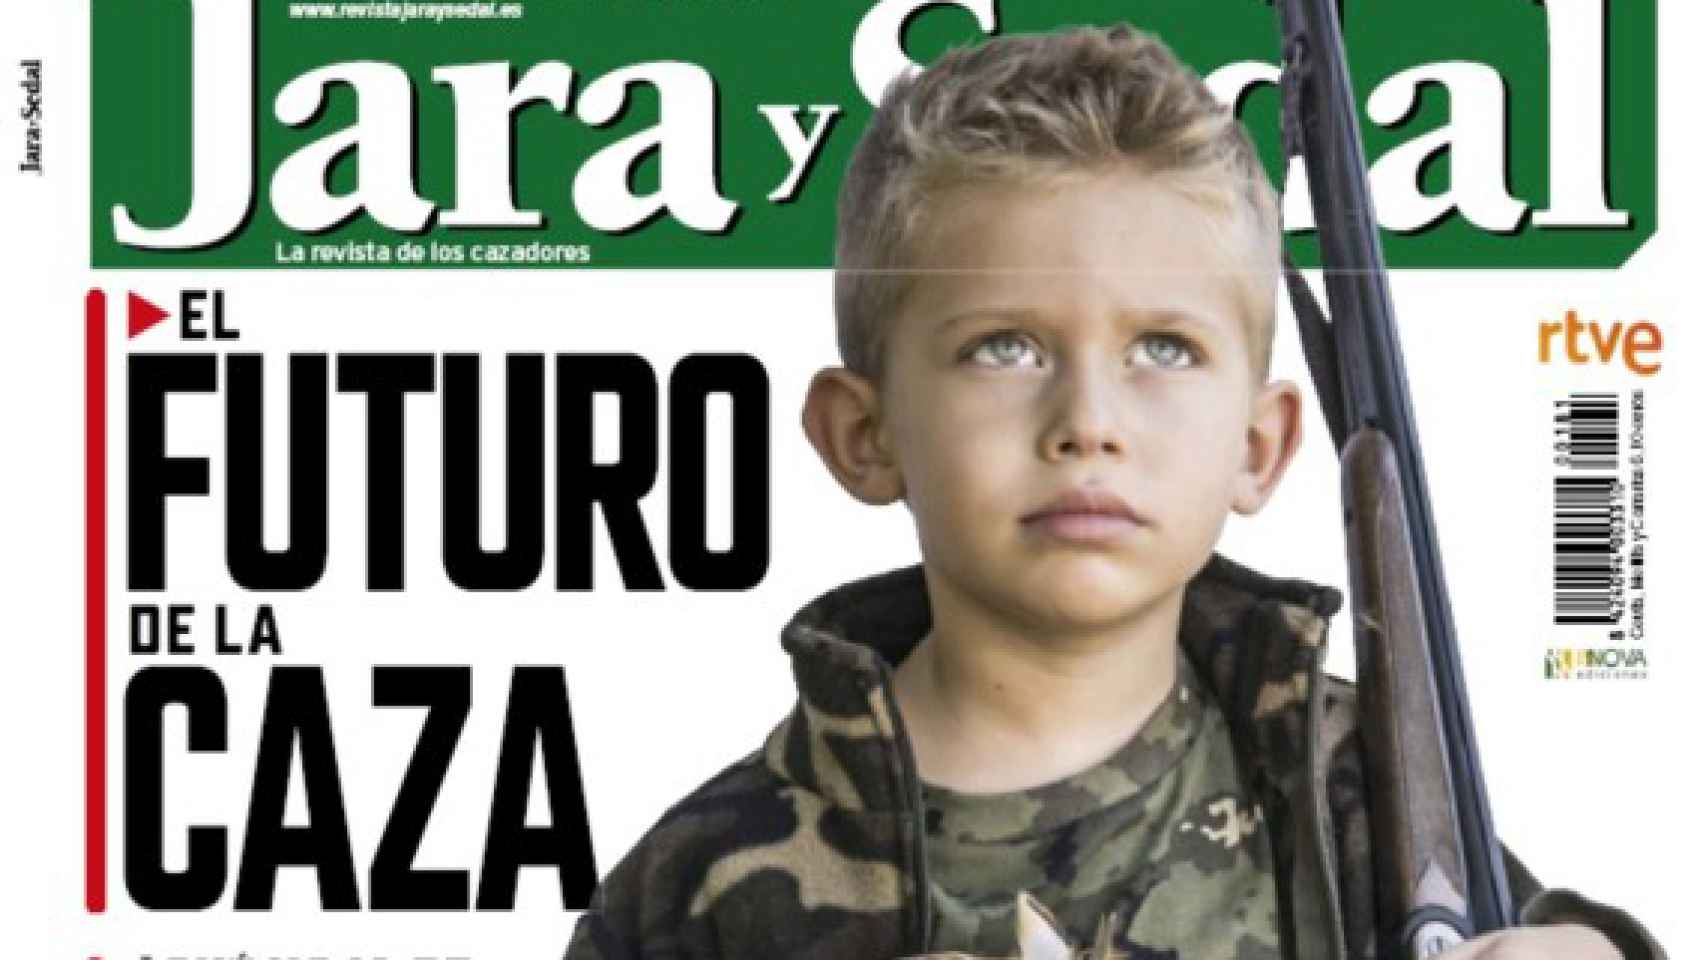 Críticas a RTVE por patrocinar una portada de 'Jara y sedal' con un niño armado